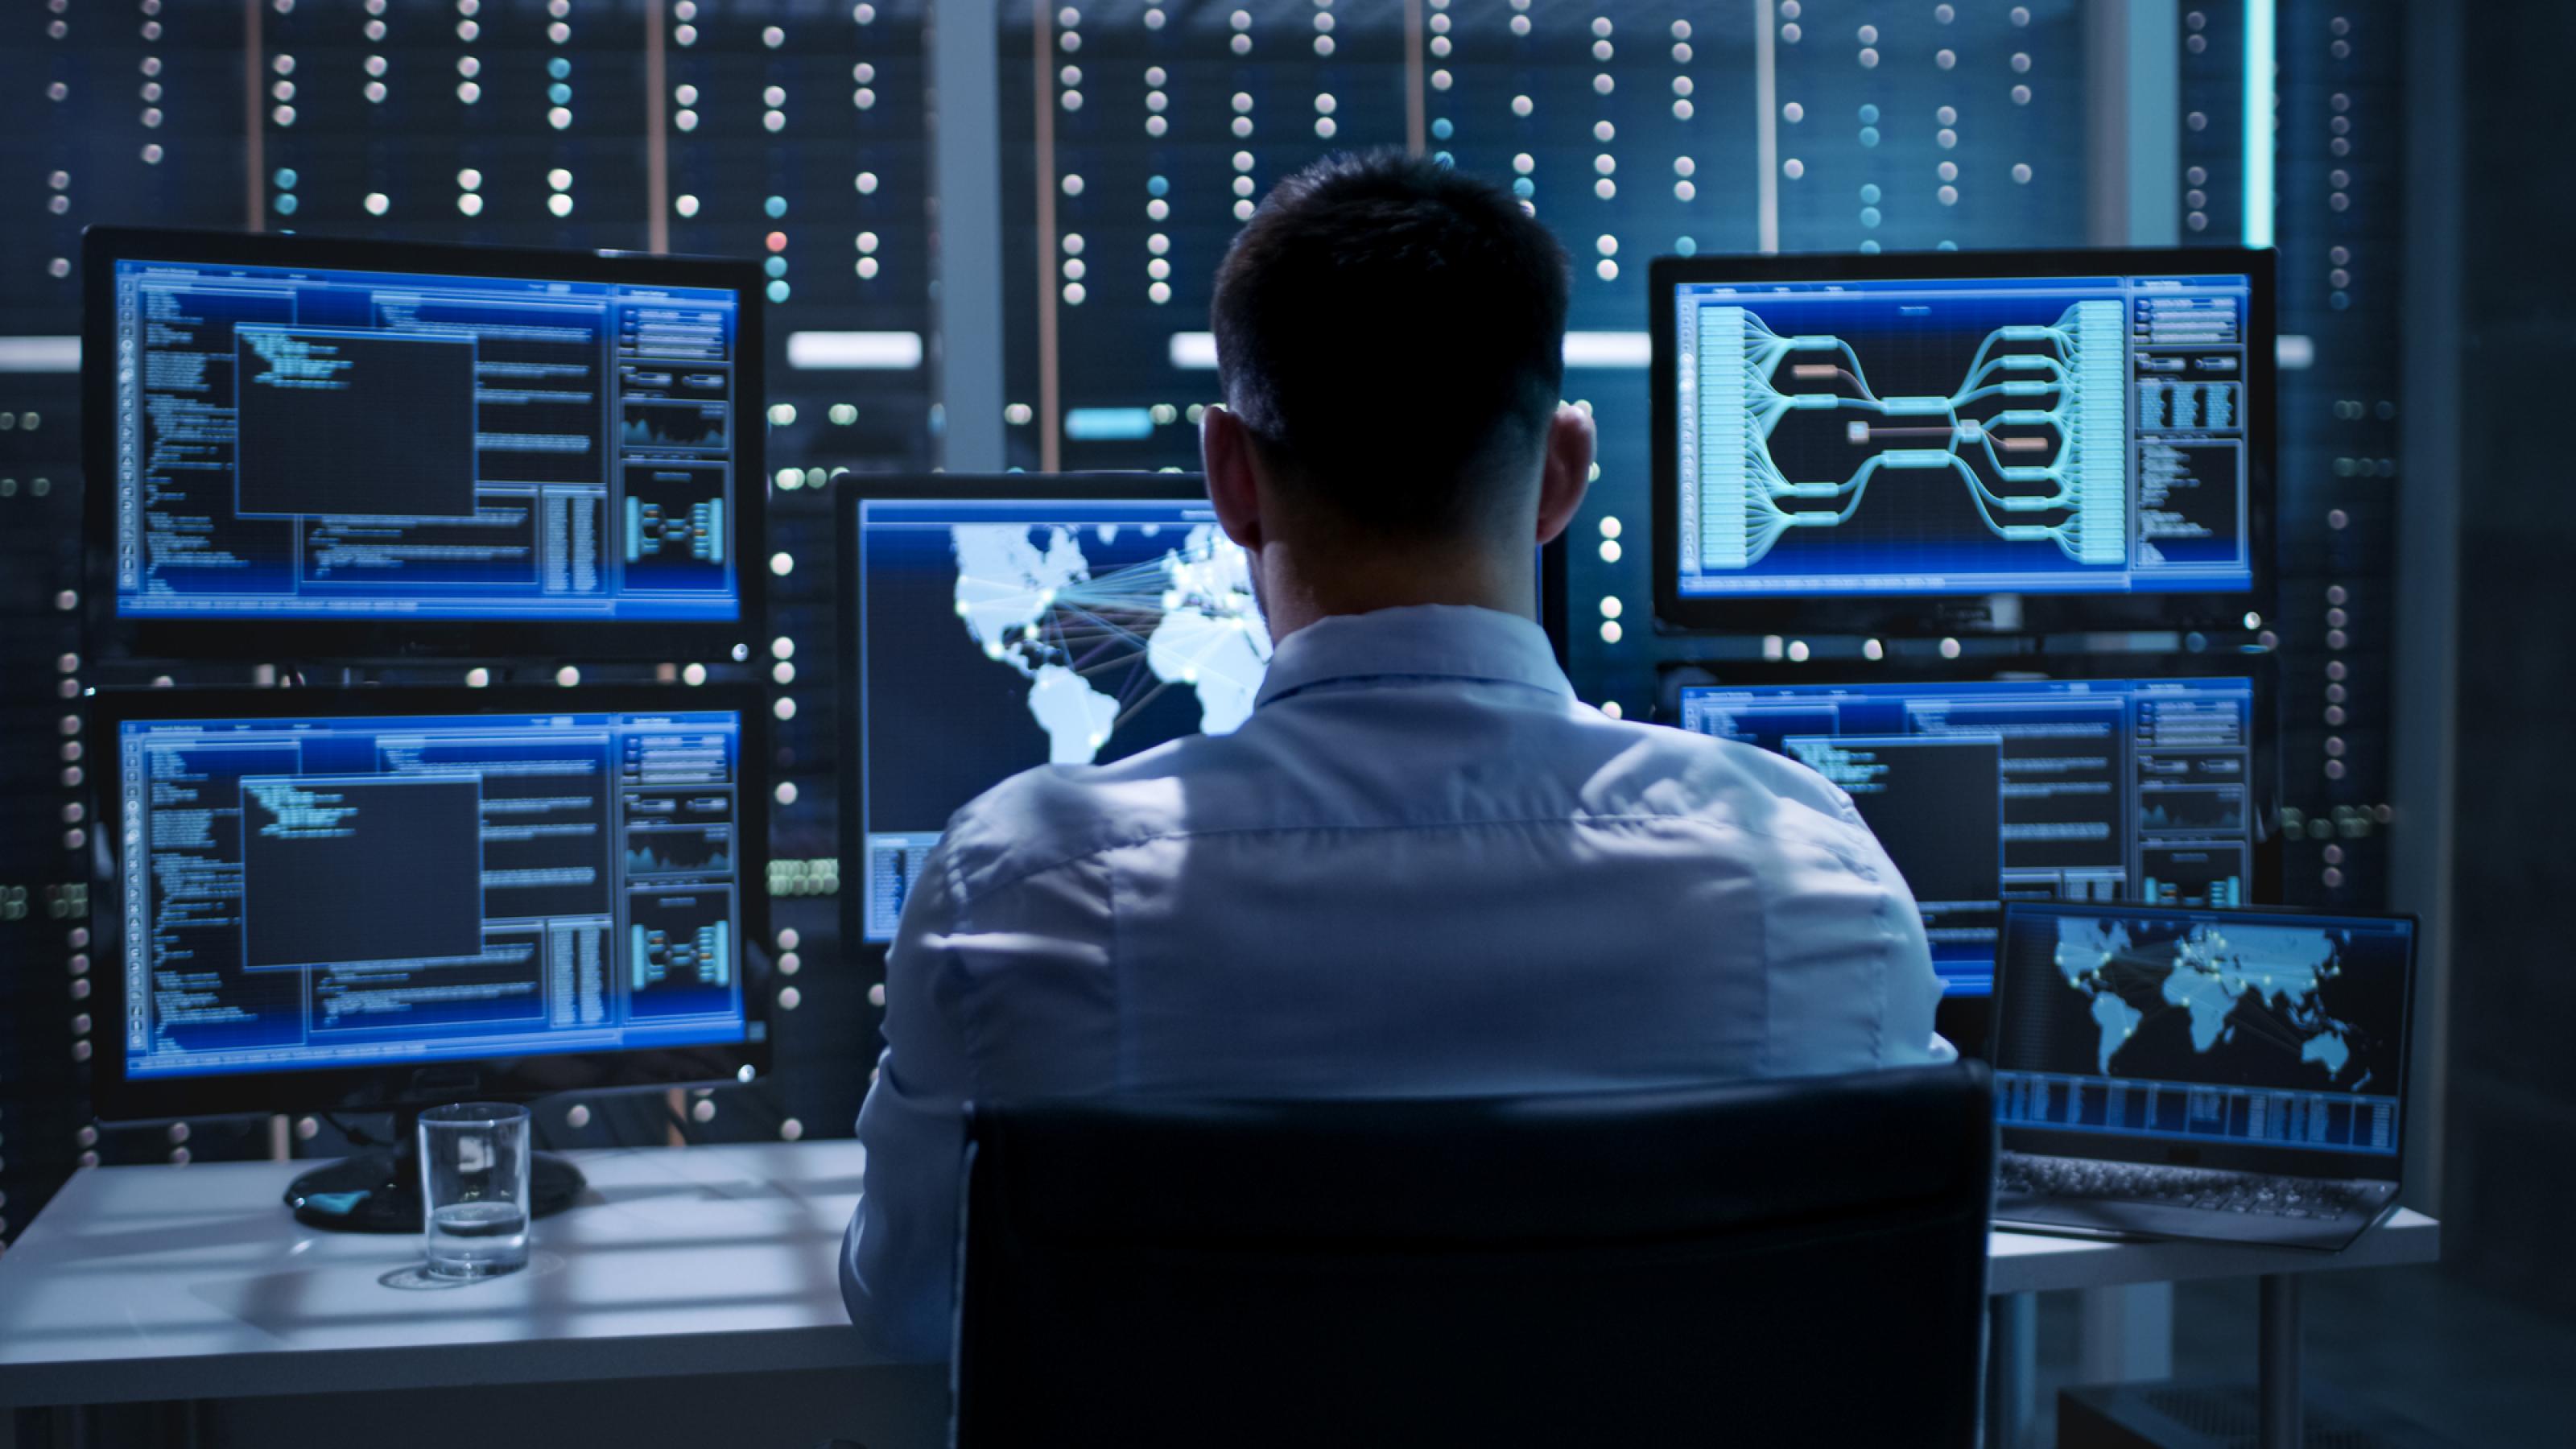 Ein Mann sitzt in einem Büro vor vielen Bildschirmen, die blau leuchten